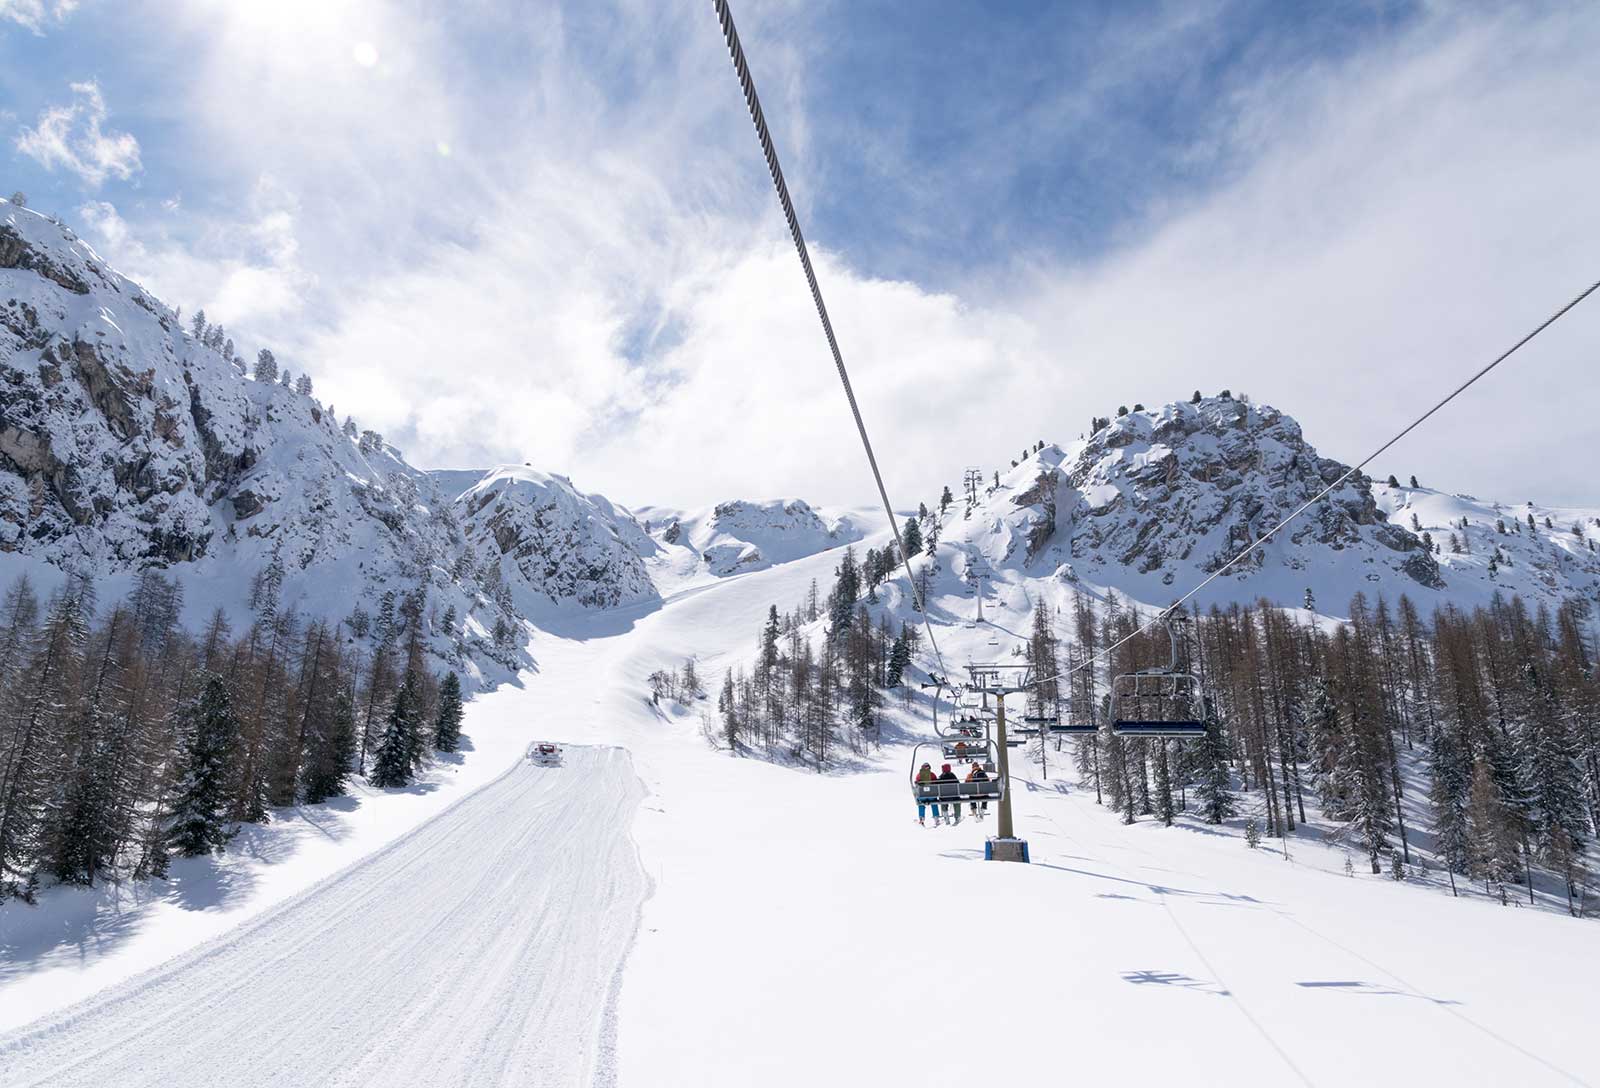 Cortina d'Amprezzo ski resort, Italy